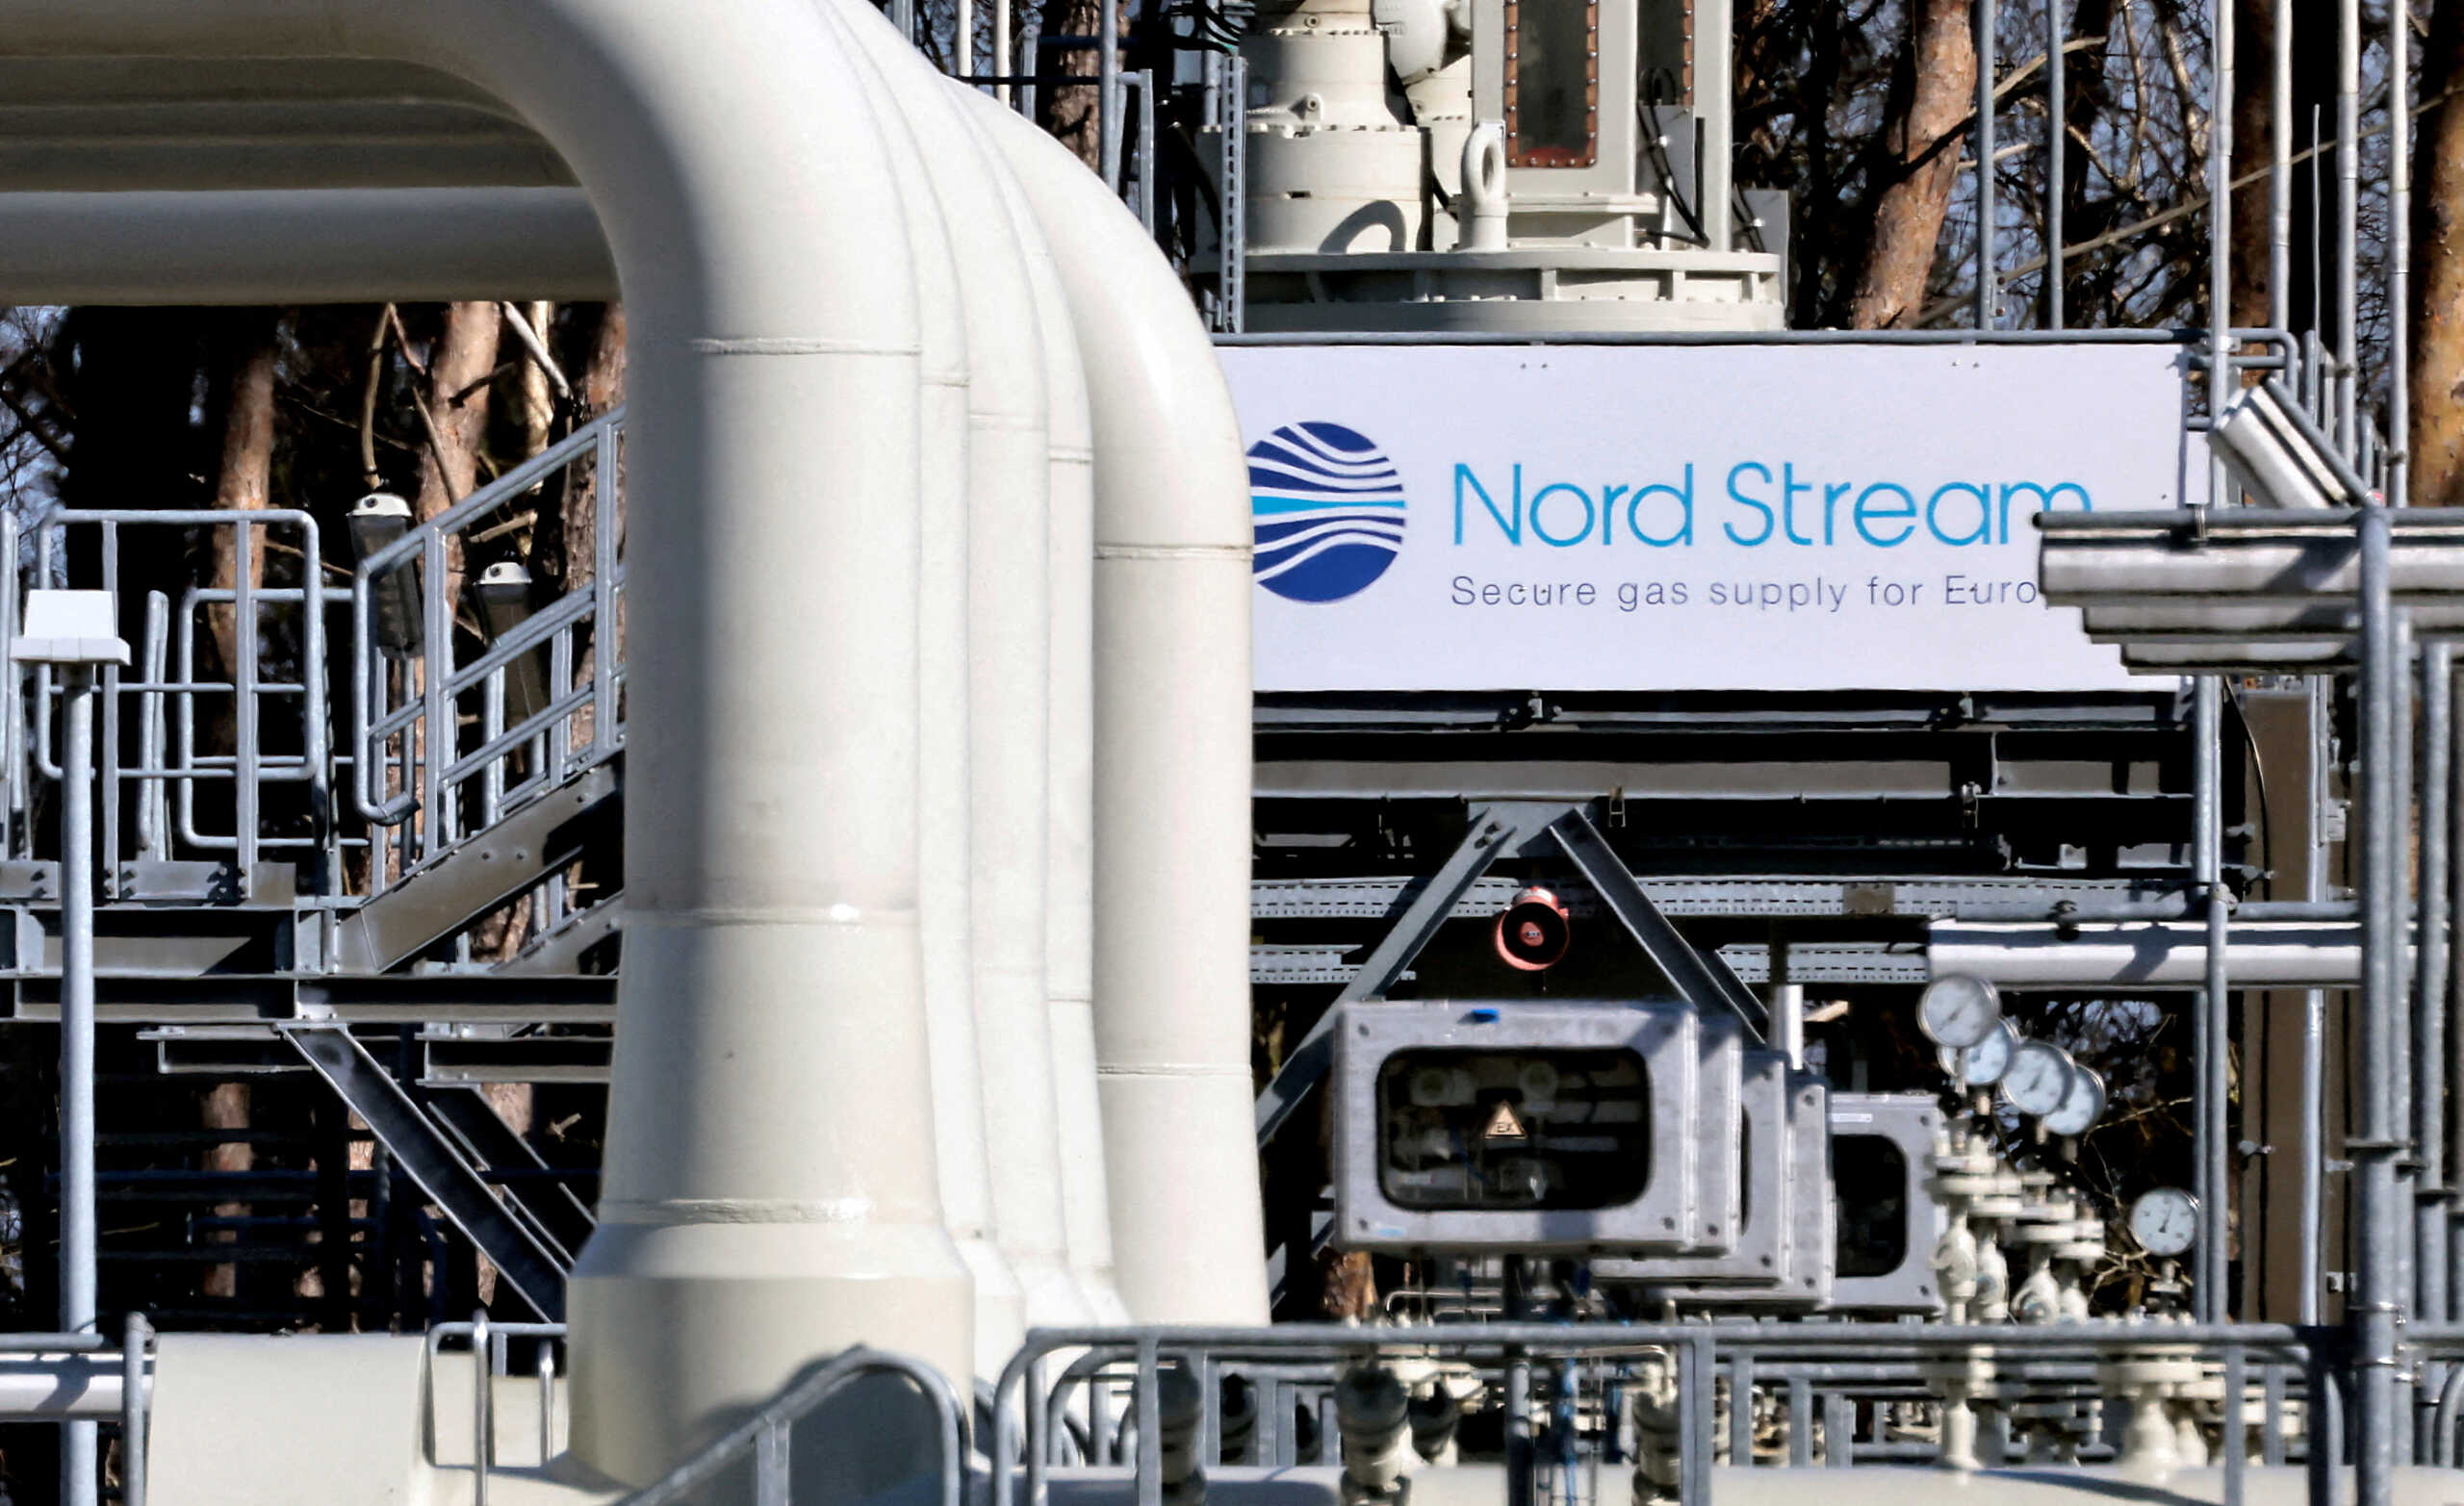 Η Ρωσία σταμάτησε τις παραδόσεις φυσικού αερίου στη Γερμανία μέσω του Nord Stream